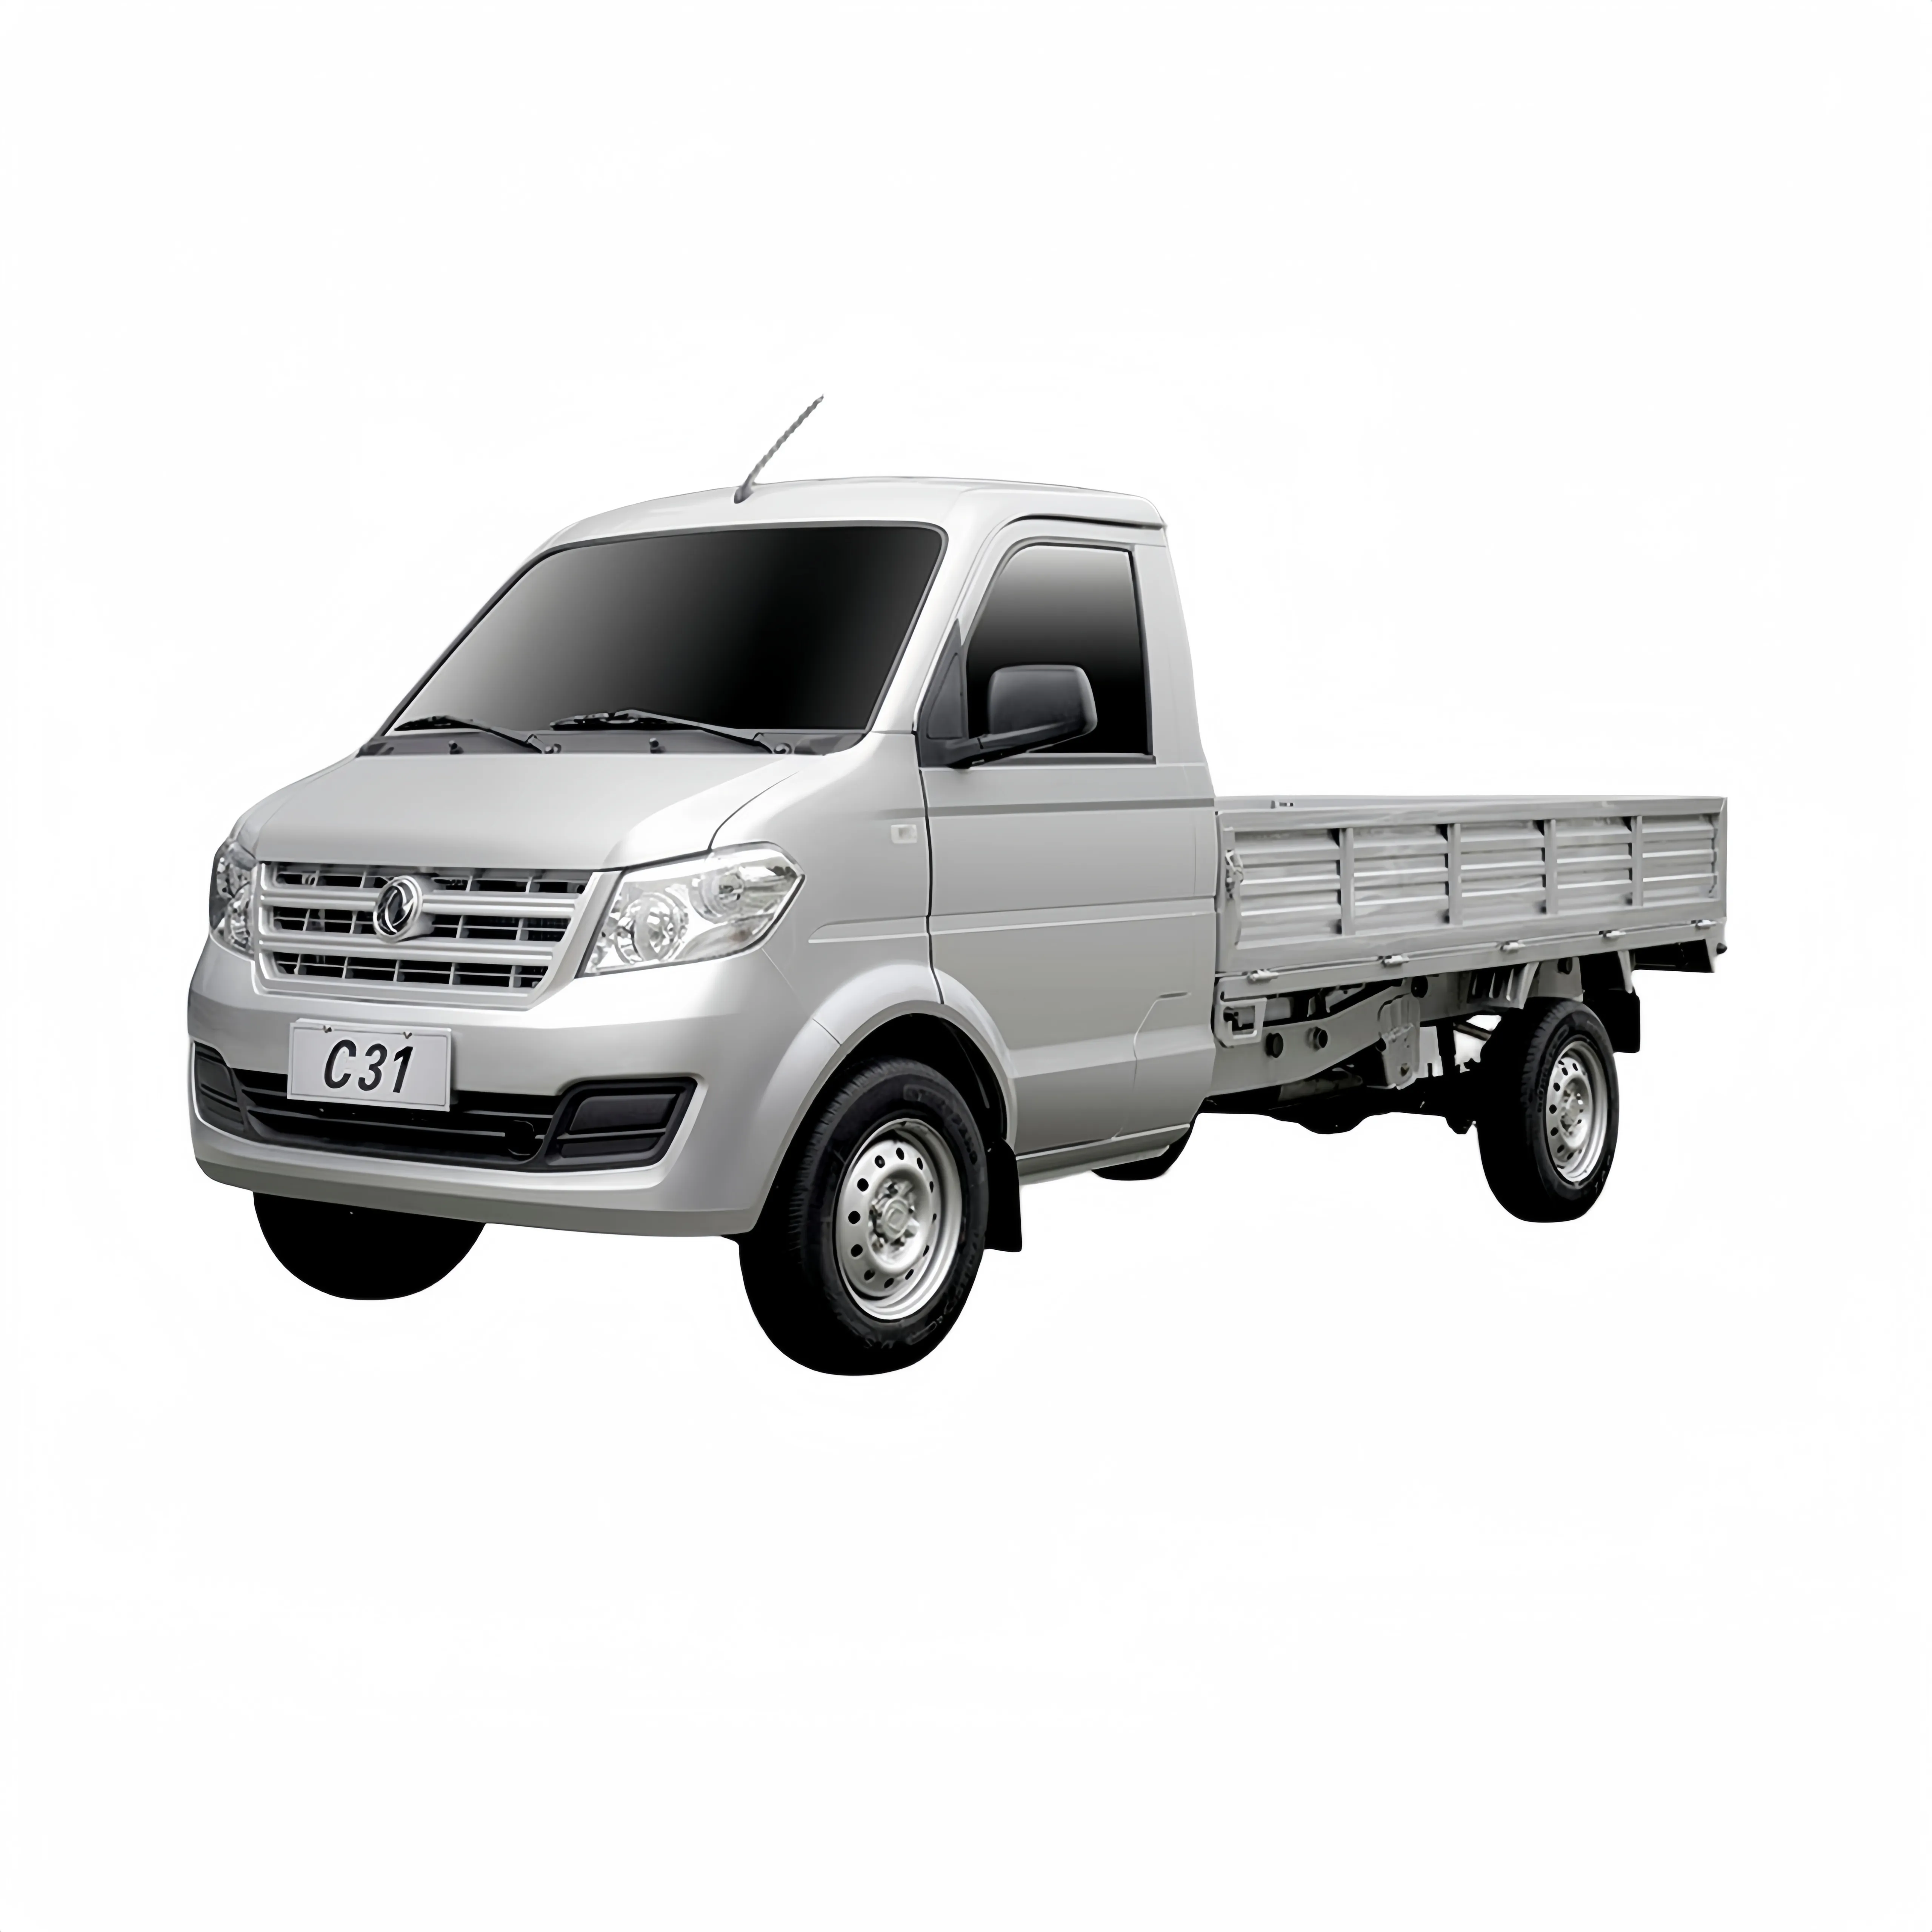 Camion pick-up chinois Dongfeng Xiaokang de marque chinoise mini camion petit pick-up 4x2 wagon de marchandises camions à cargaison élevée